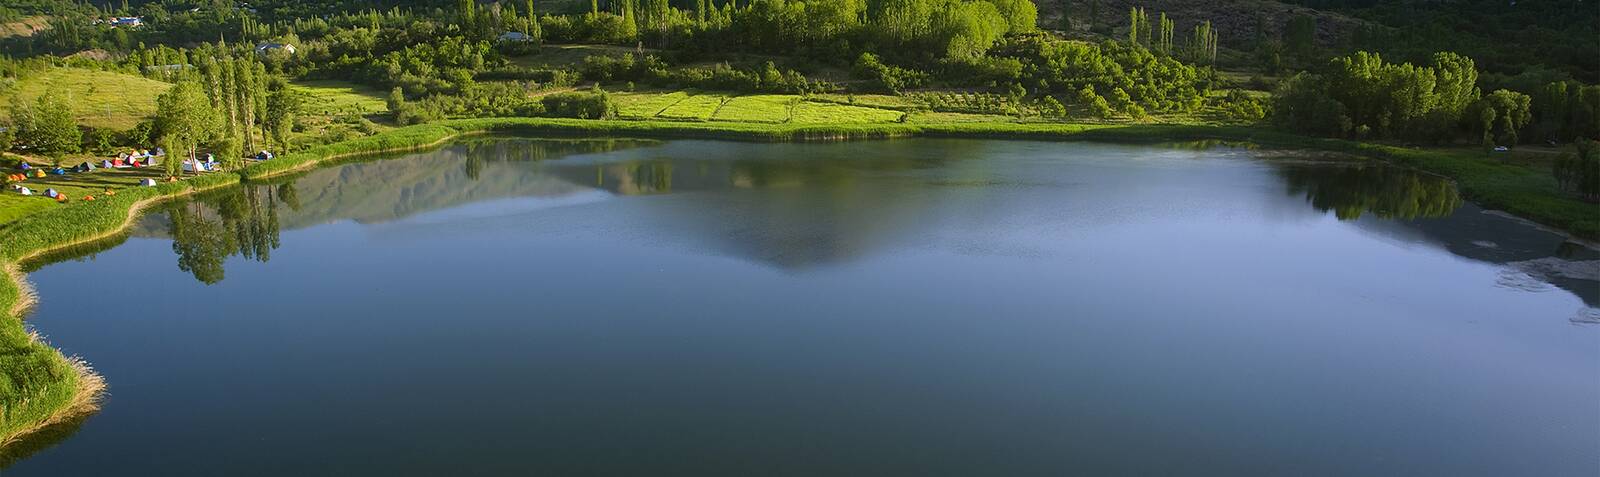 دریاچه جادوییِ اِوان